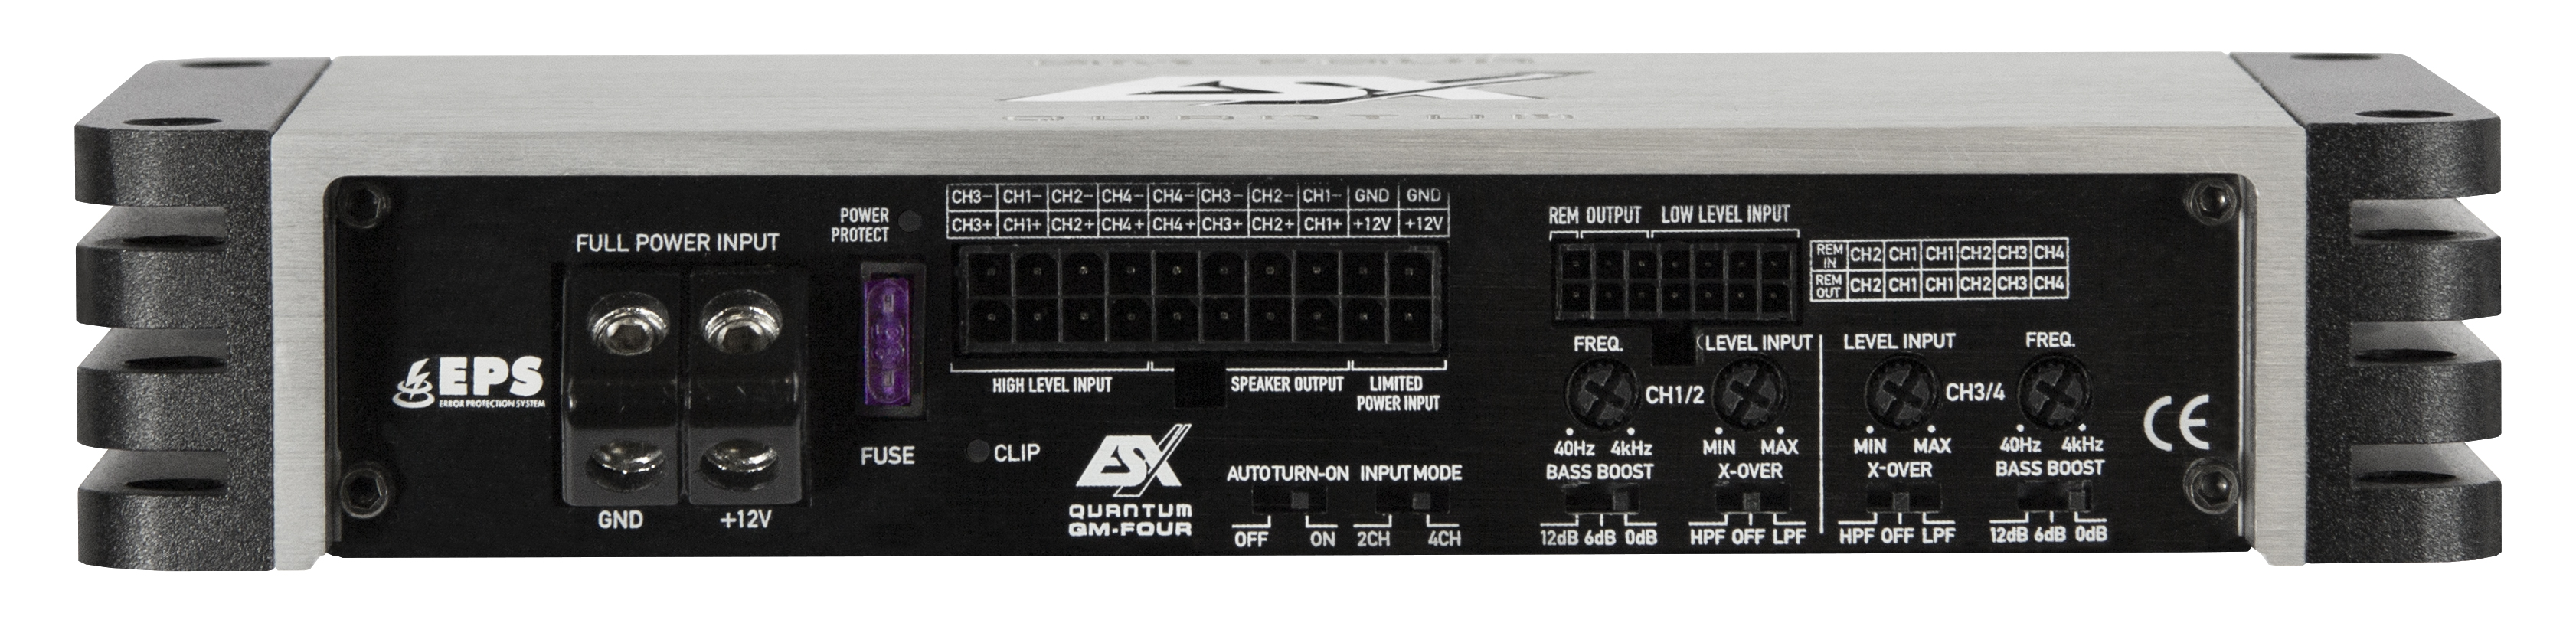 ESX QM-FOUR-PP Plug & Play 4-KANAL CLASS D Digital Verstärker 360 Watt RMS